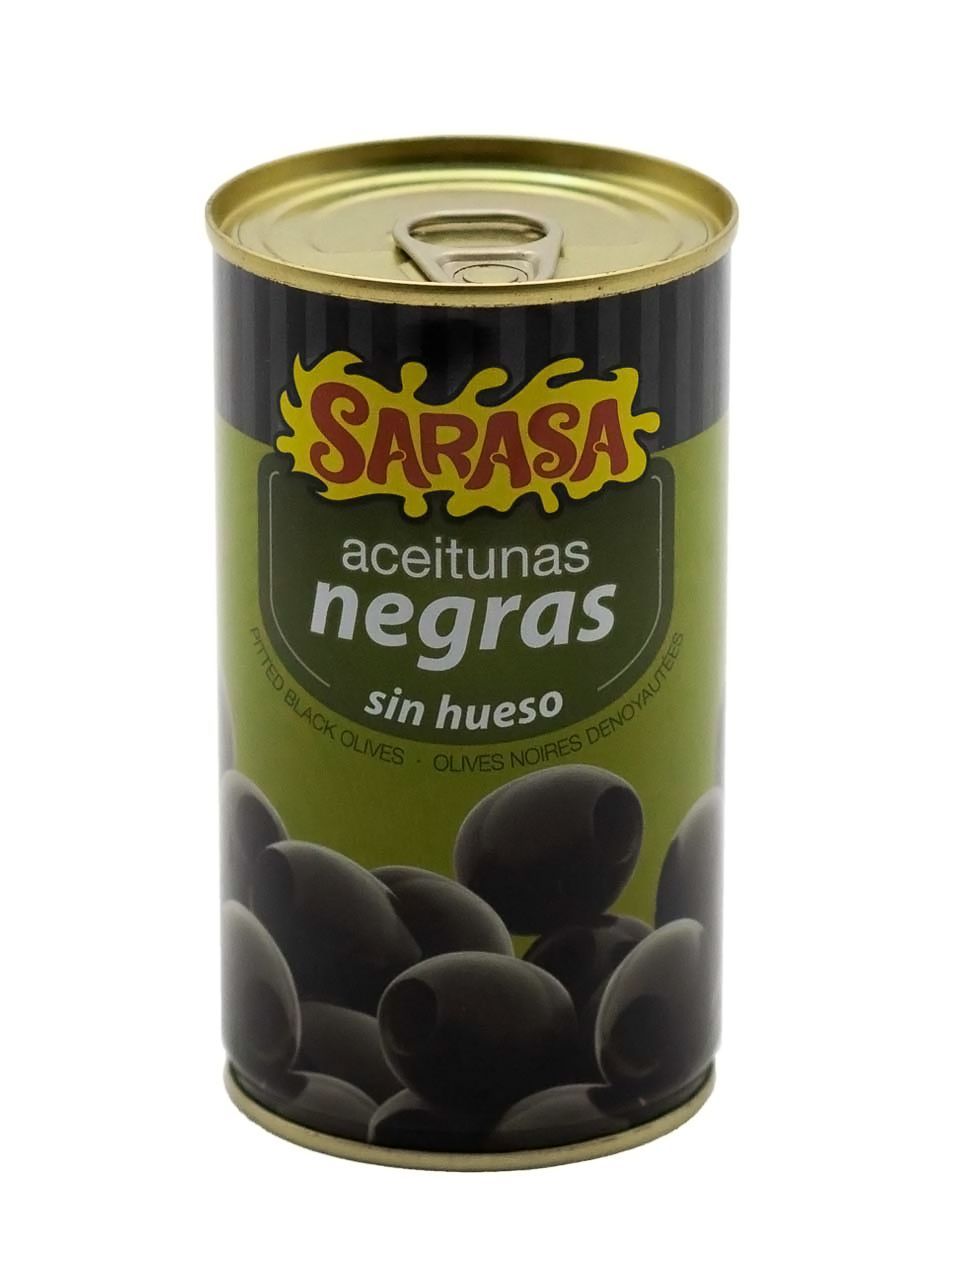 Оливки черные без косточки "Асейтунас негра син уесо" 0,37 литра